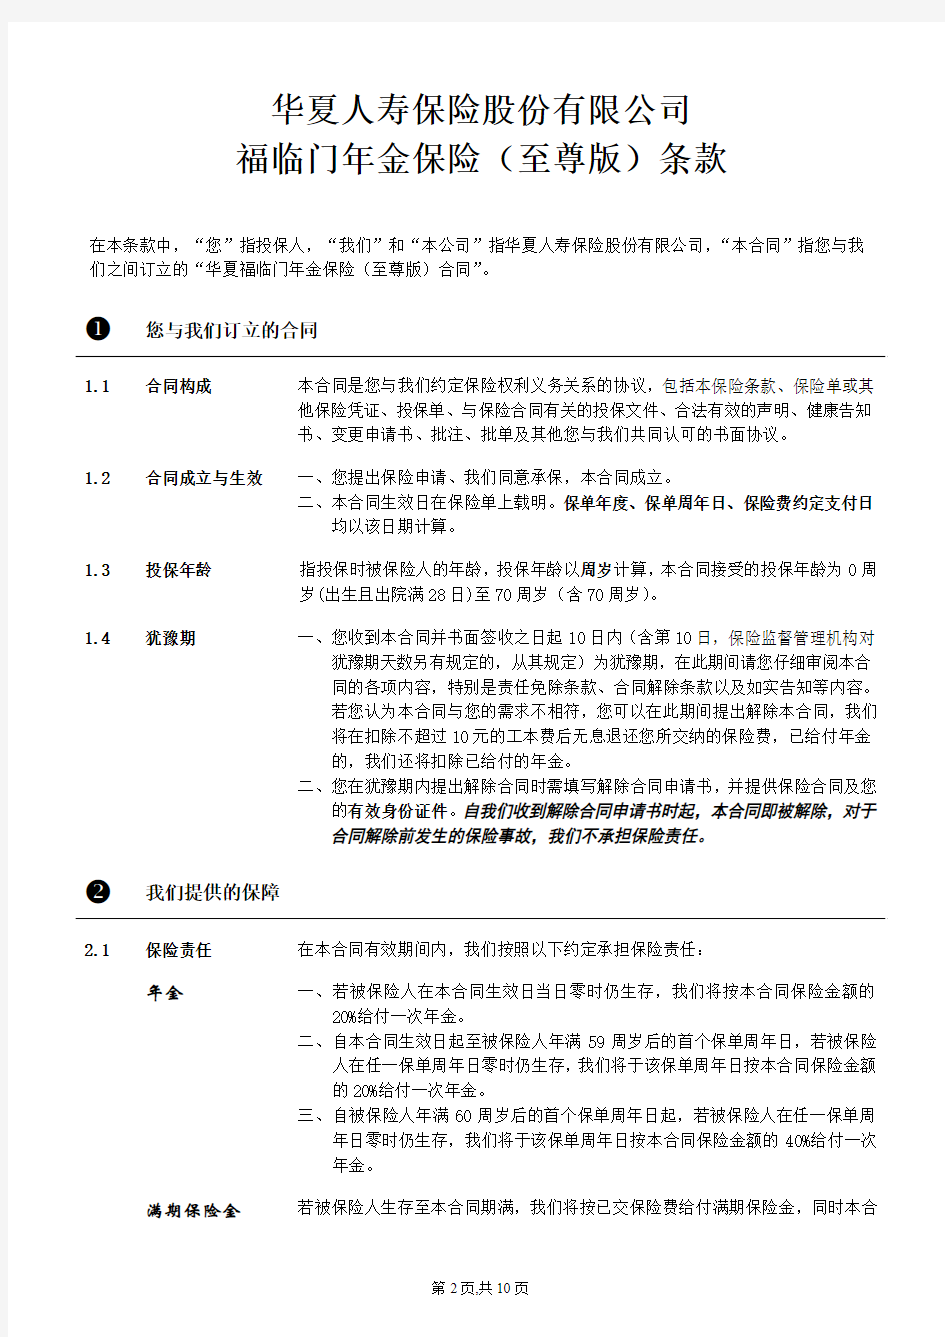 华夏人寿福临门年金保险(至尊版)条款